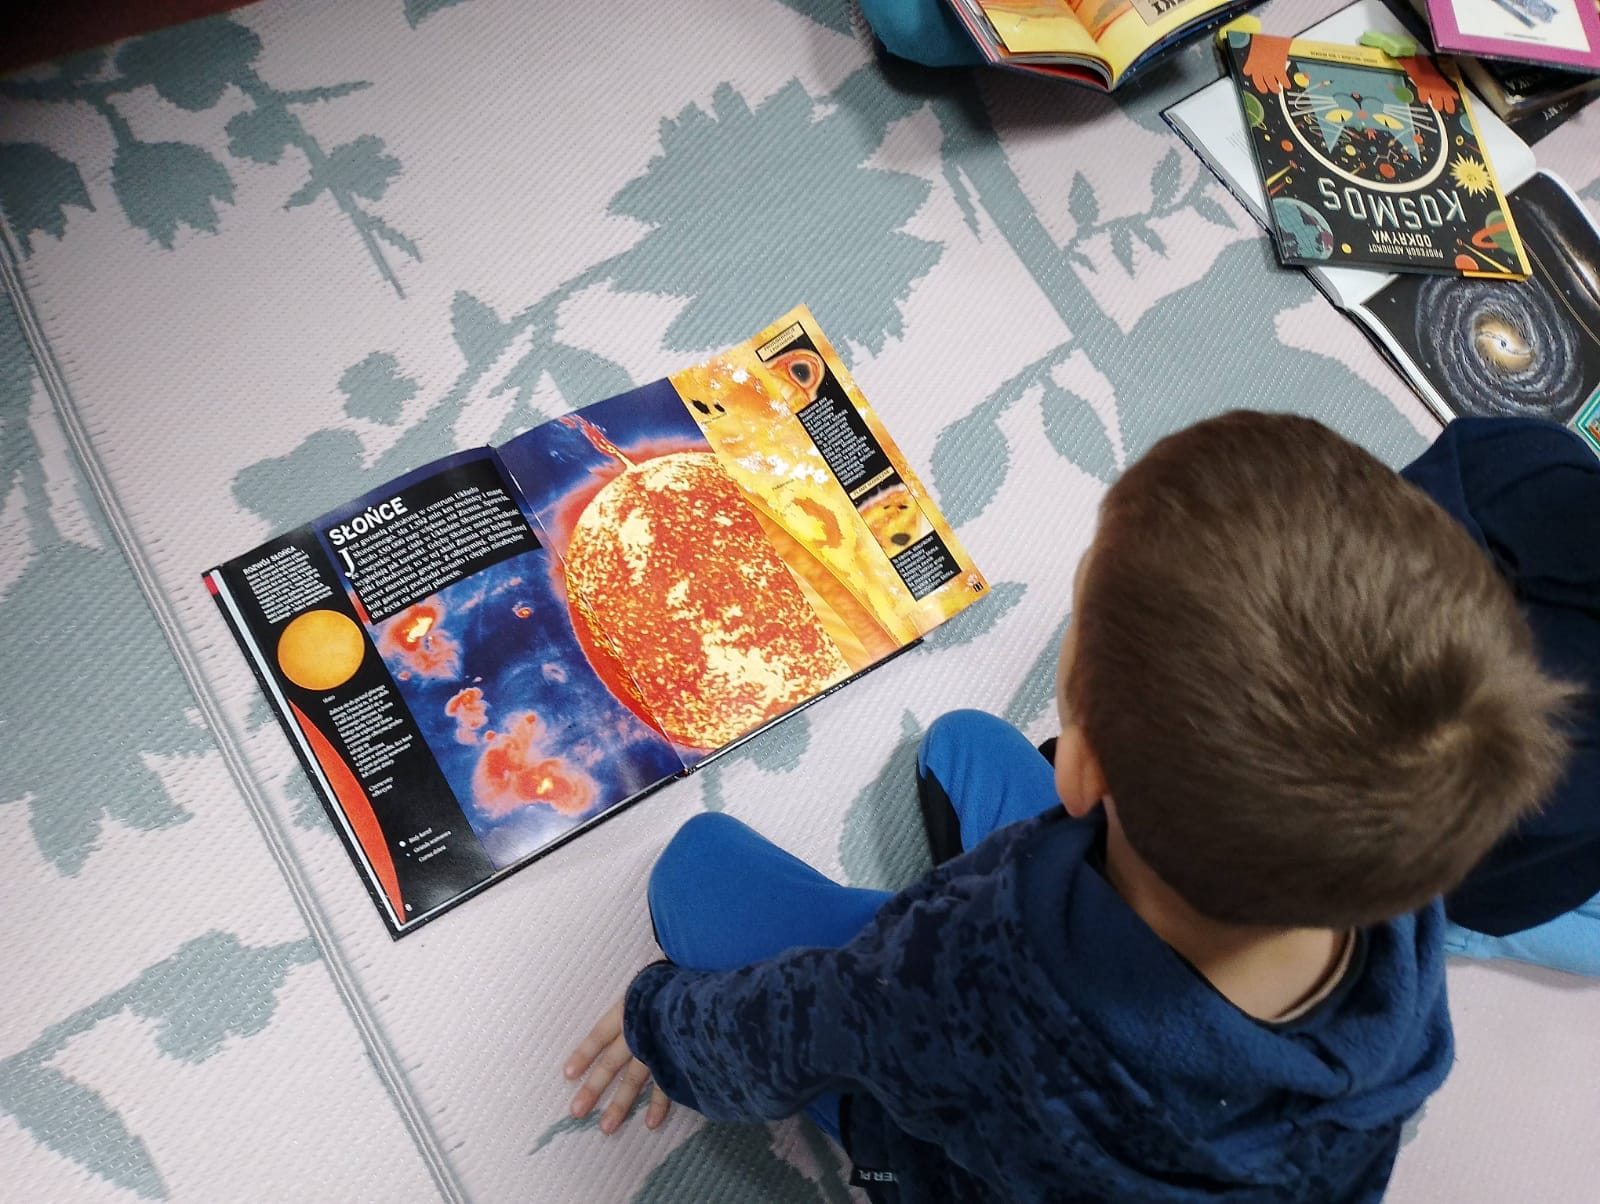 Chłopiec oglądający książkę o kosmosie.